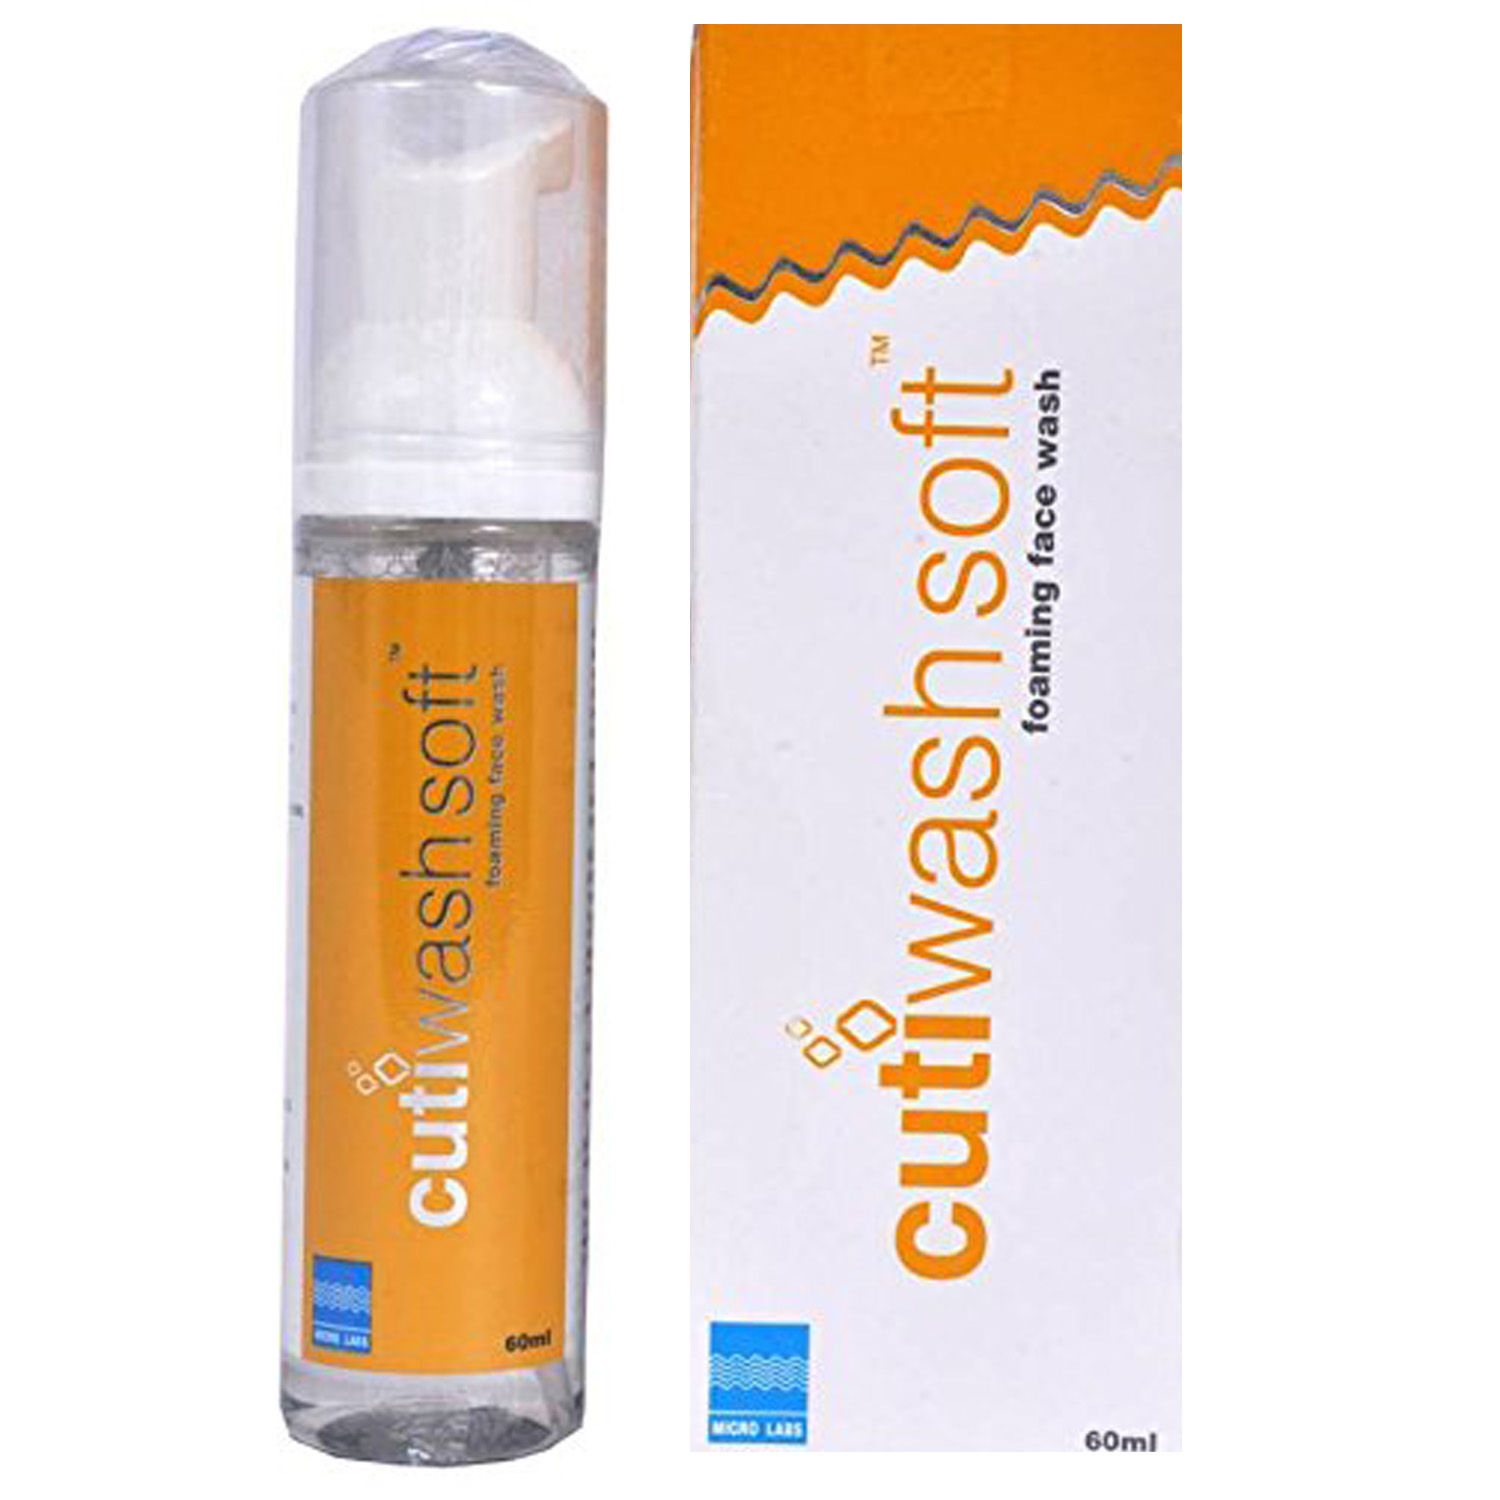 Buy Cutiwash Soft Foaming Face Wash, 60 ml Online